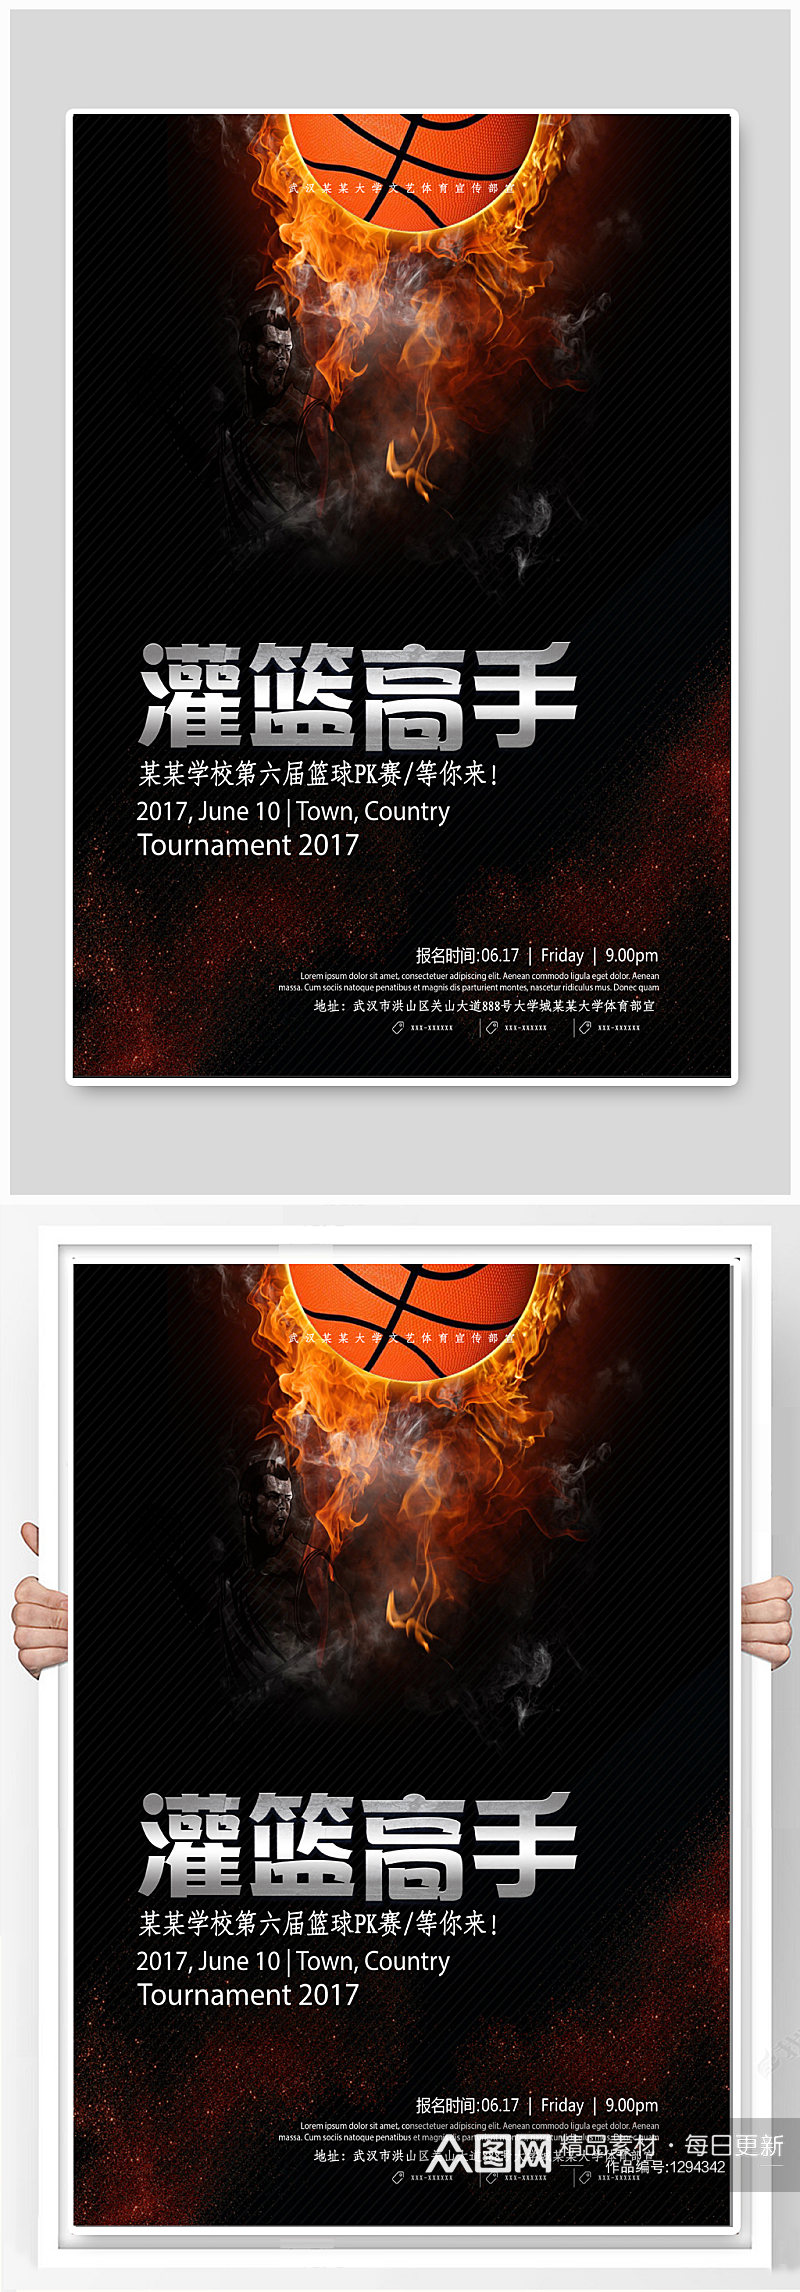 篮球比赛篮球运动宣传海报素材